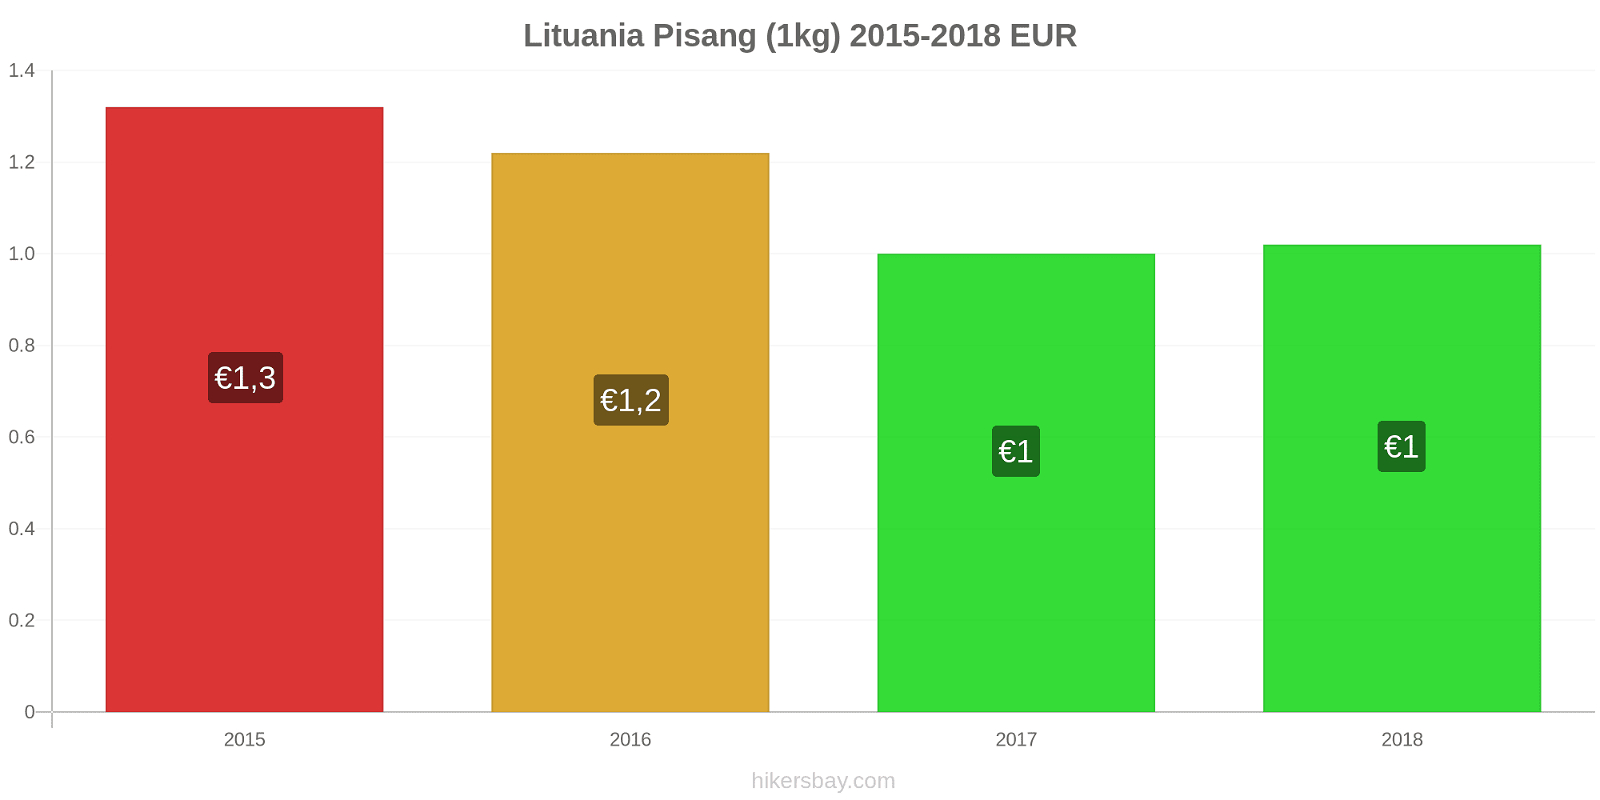 Lituania perubahan harga Pisang (1kg) hikersbay.com